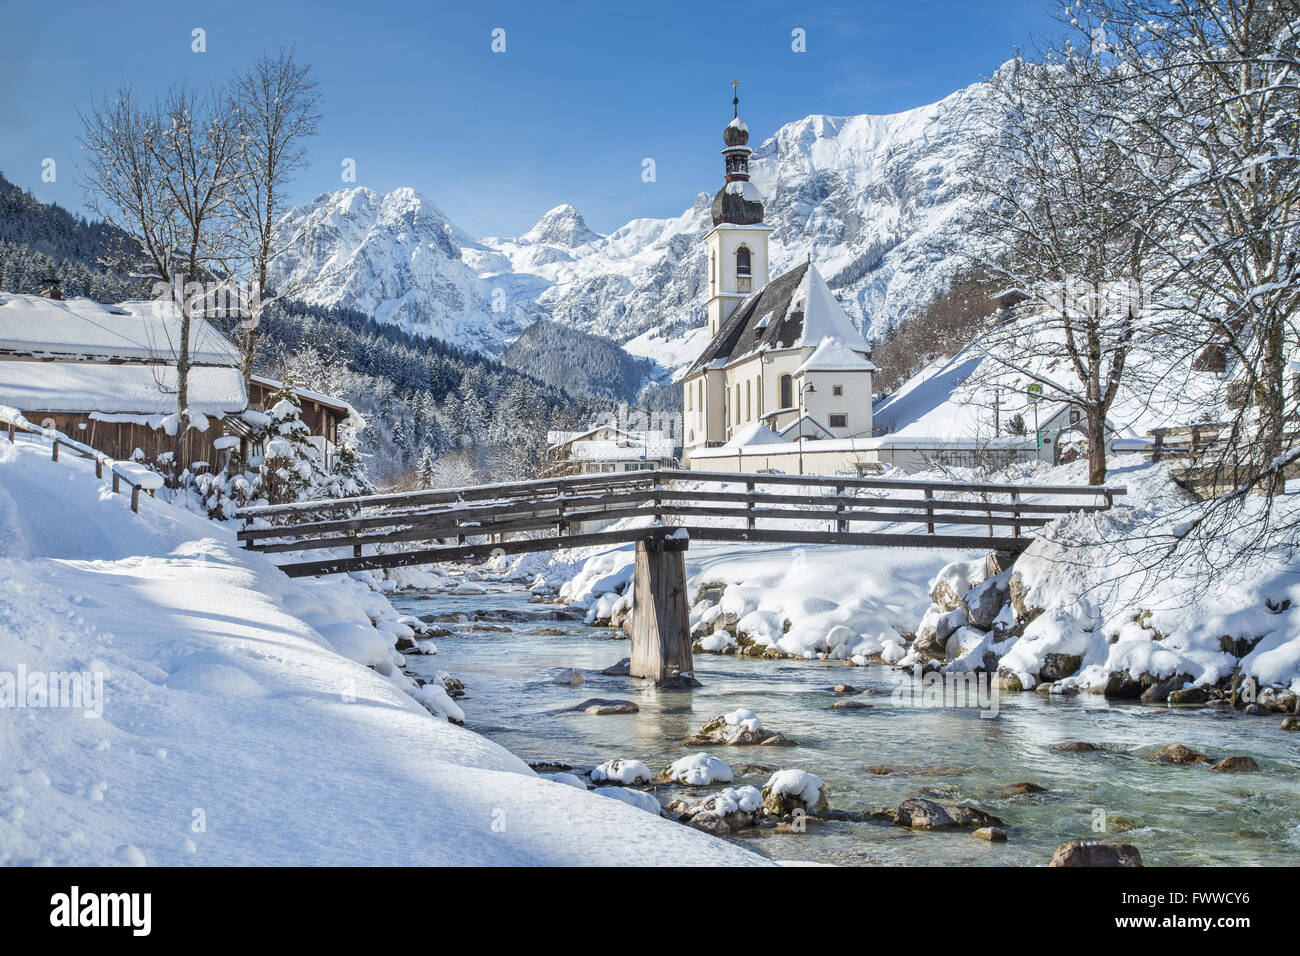 Visualizzazione classica del celebre chiesa di Ramsau in inverno, Berchtesgadener Land di Baviera, Germania Foto Stock